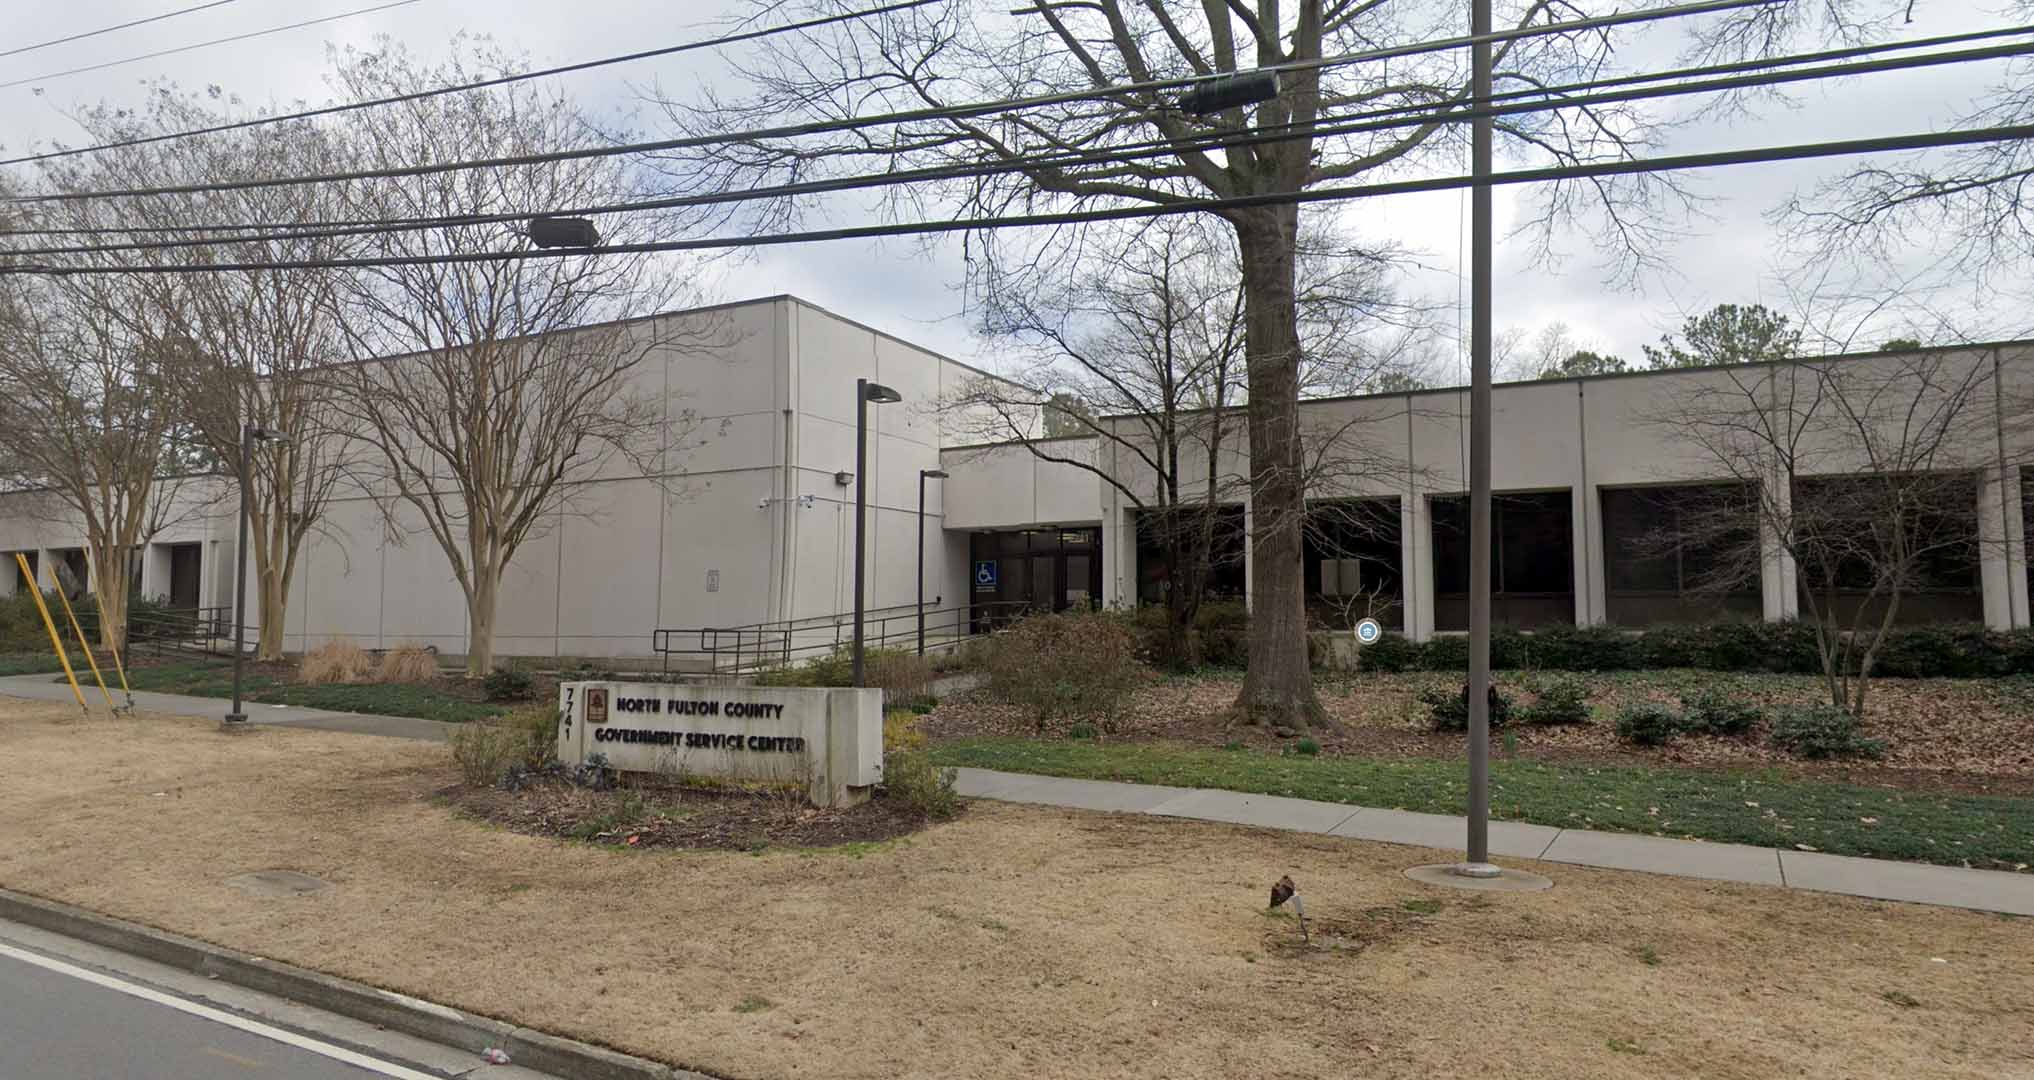 North Fulton Government Service Center